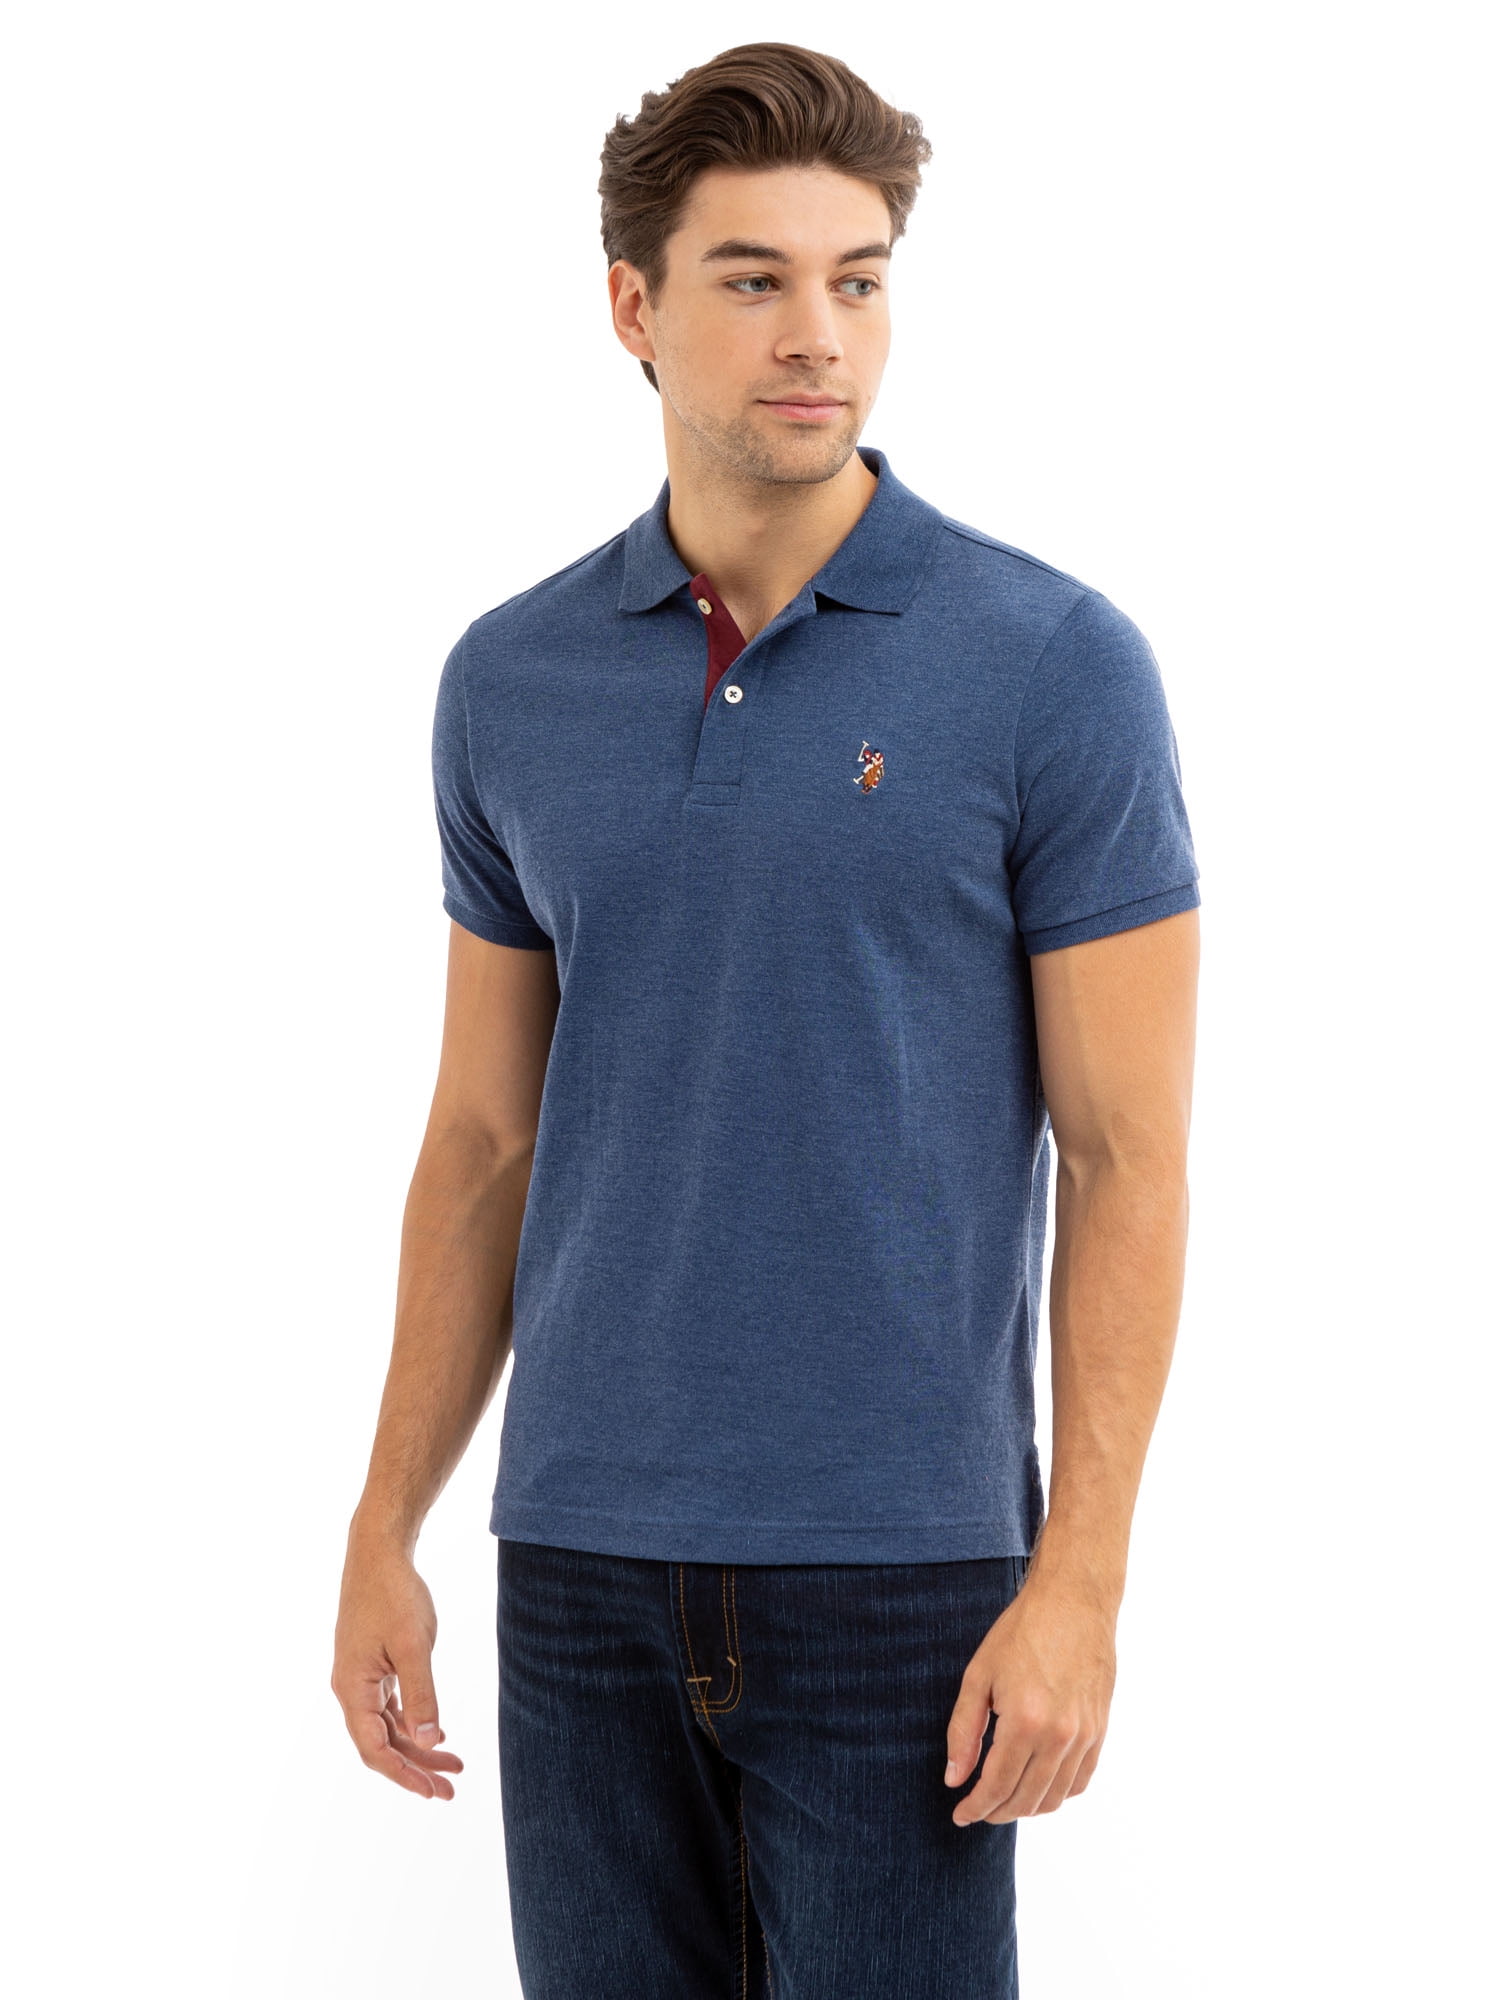 U.S. Polo Assn. Men's Interlock Polo Shirt - Walmart.com